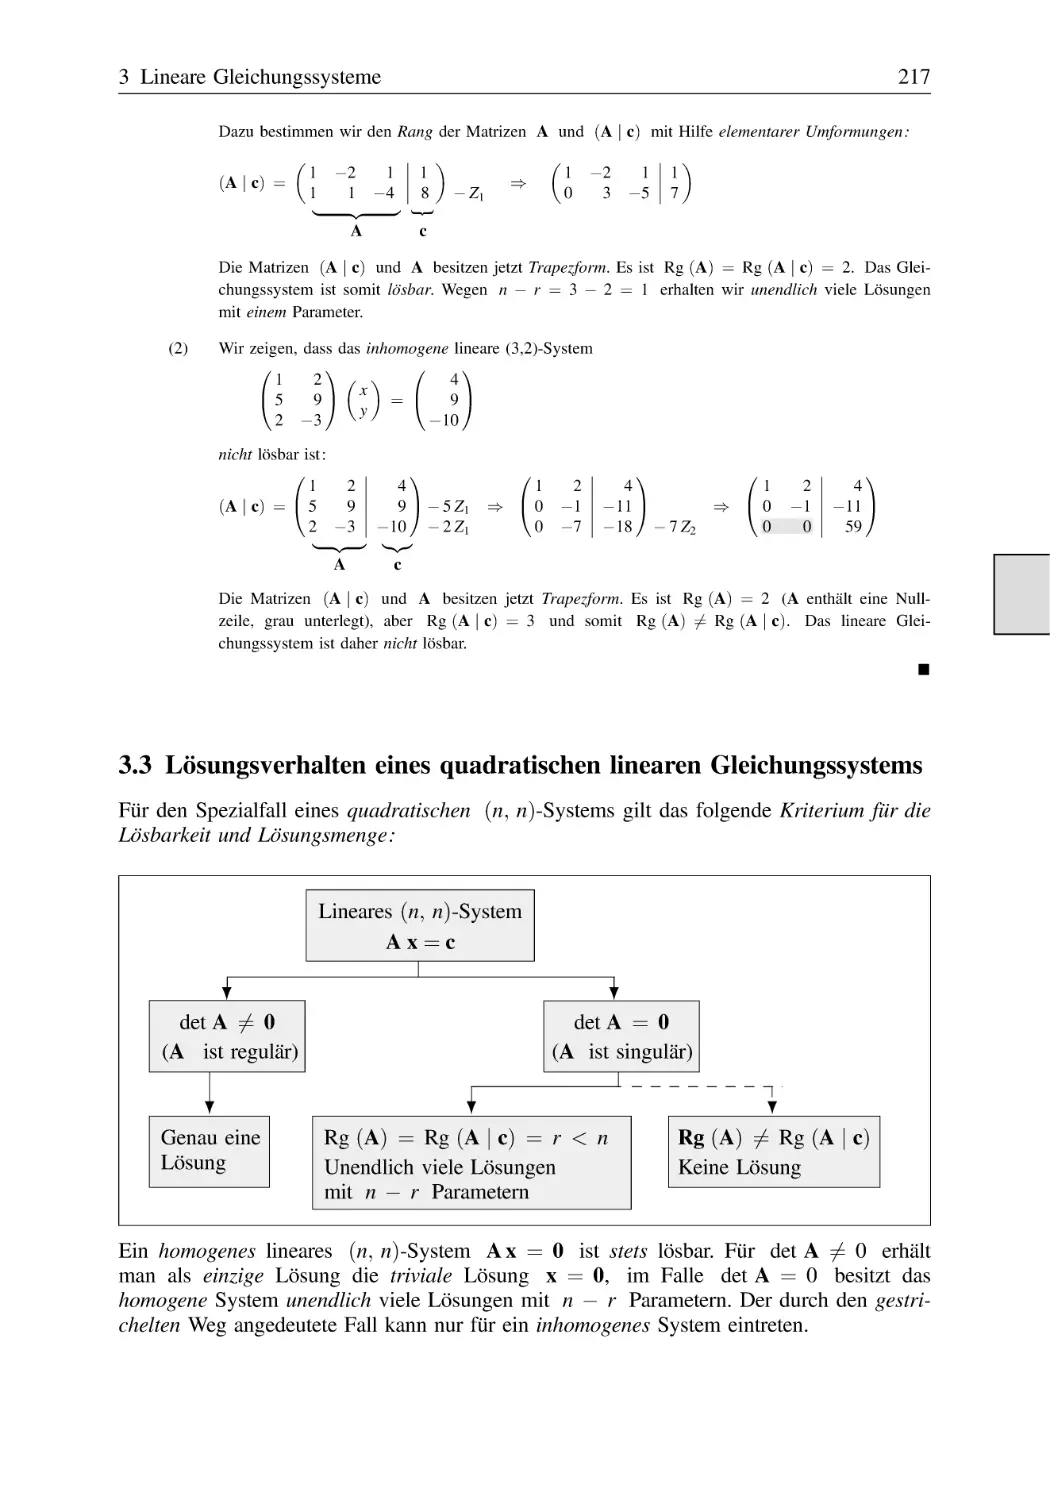 3.3 Lösungsverhalten eines quadratischen linearen Gleichungssystems